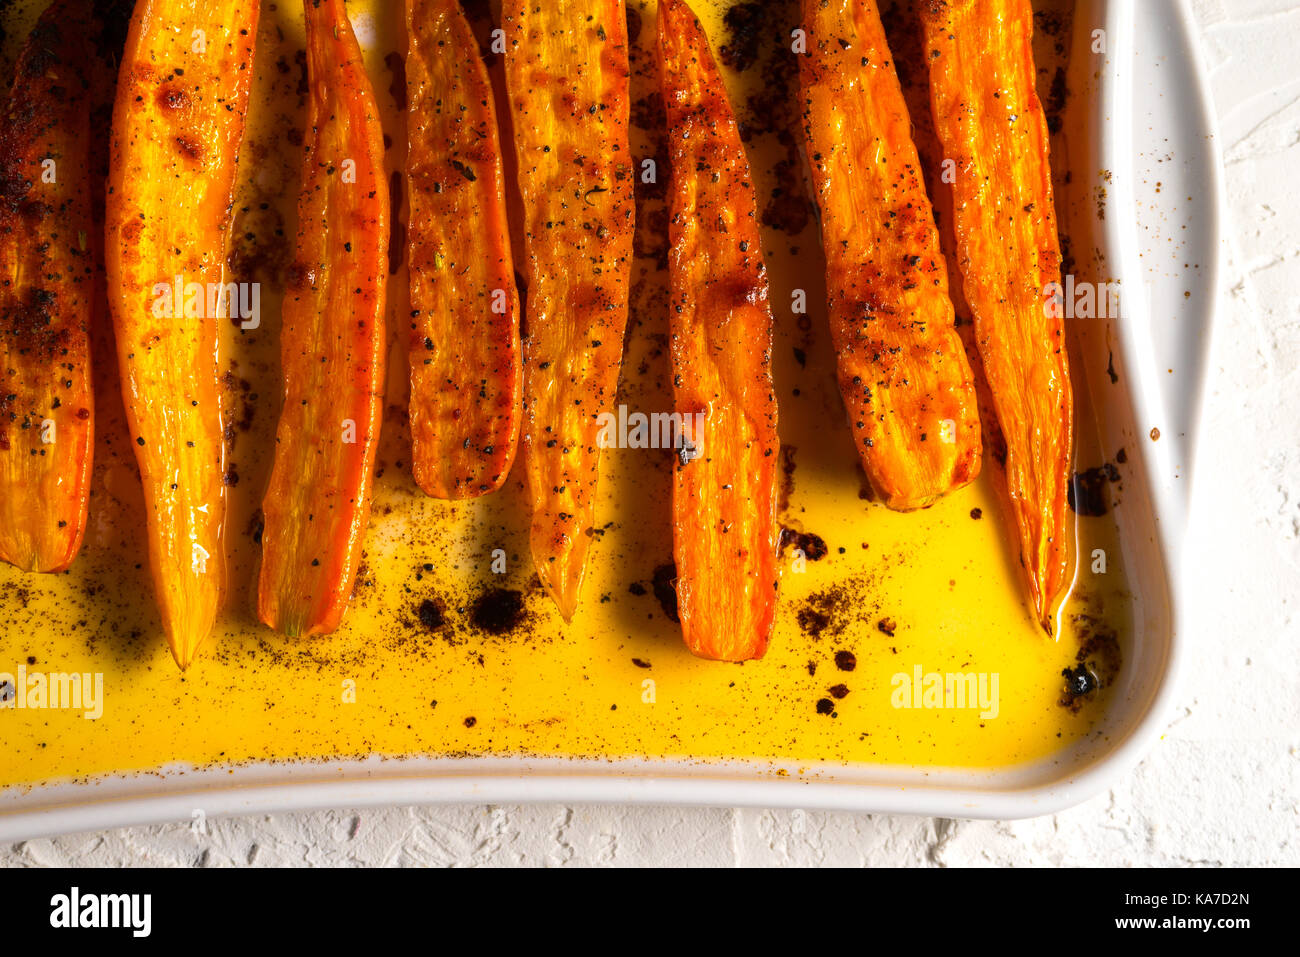 Compotée de carottes orange dans les épices sur une plaque de cuisson l'horizontale Banque D'Images